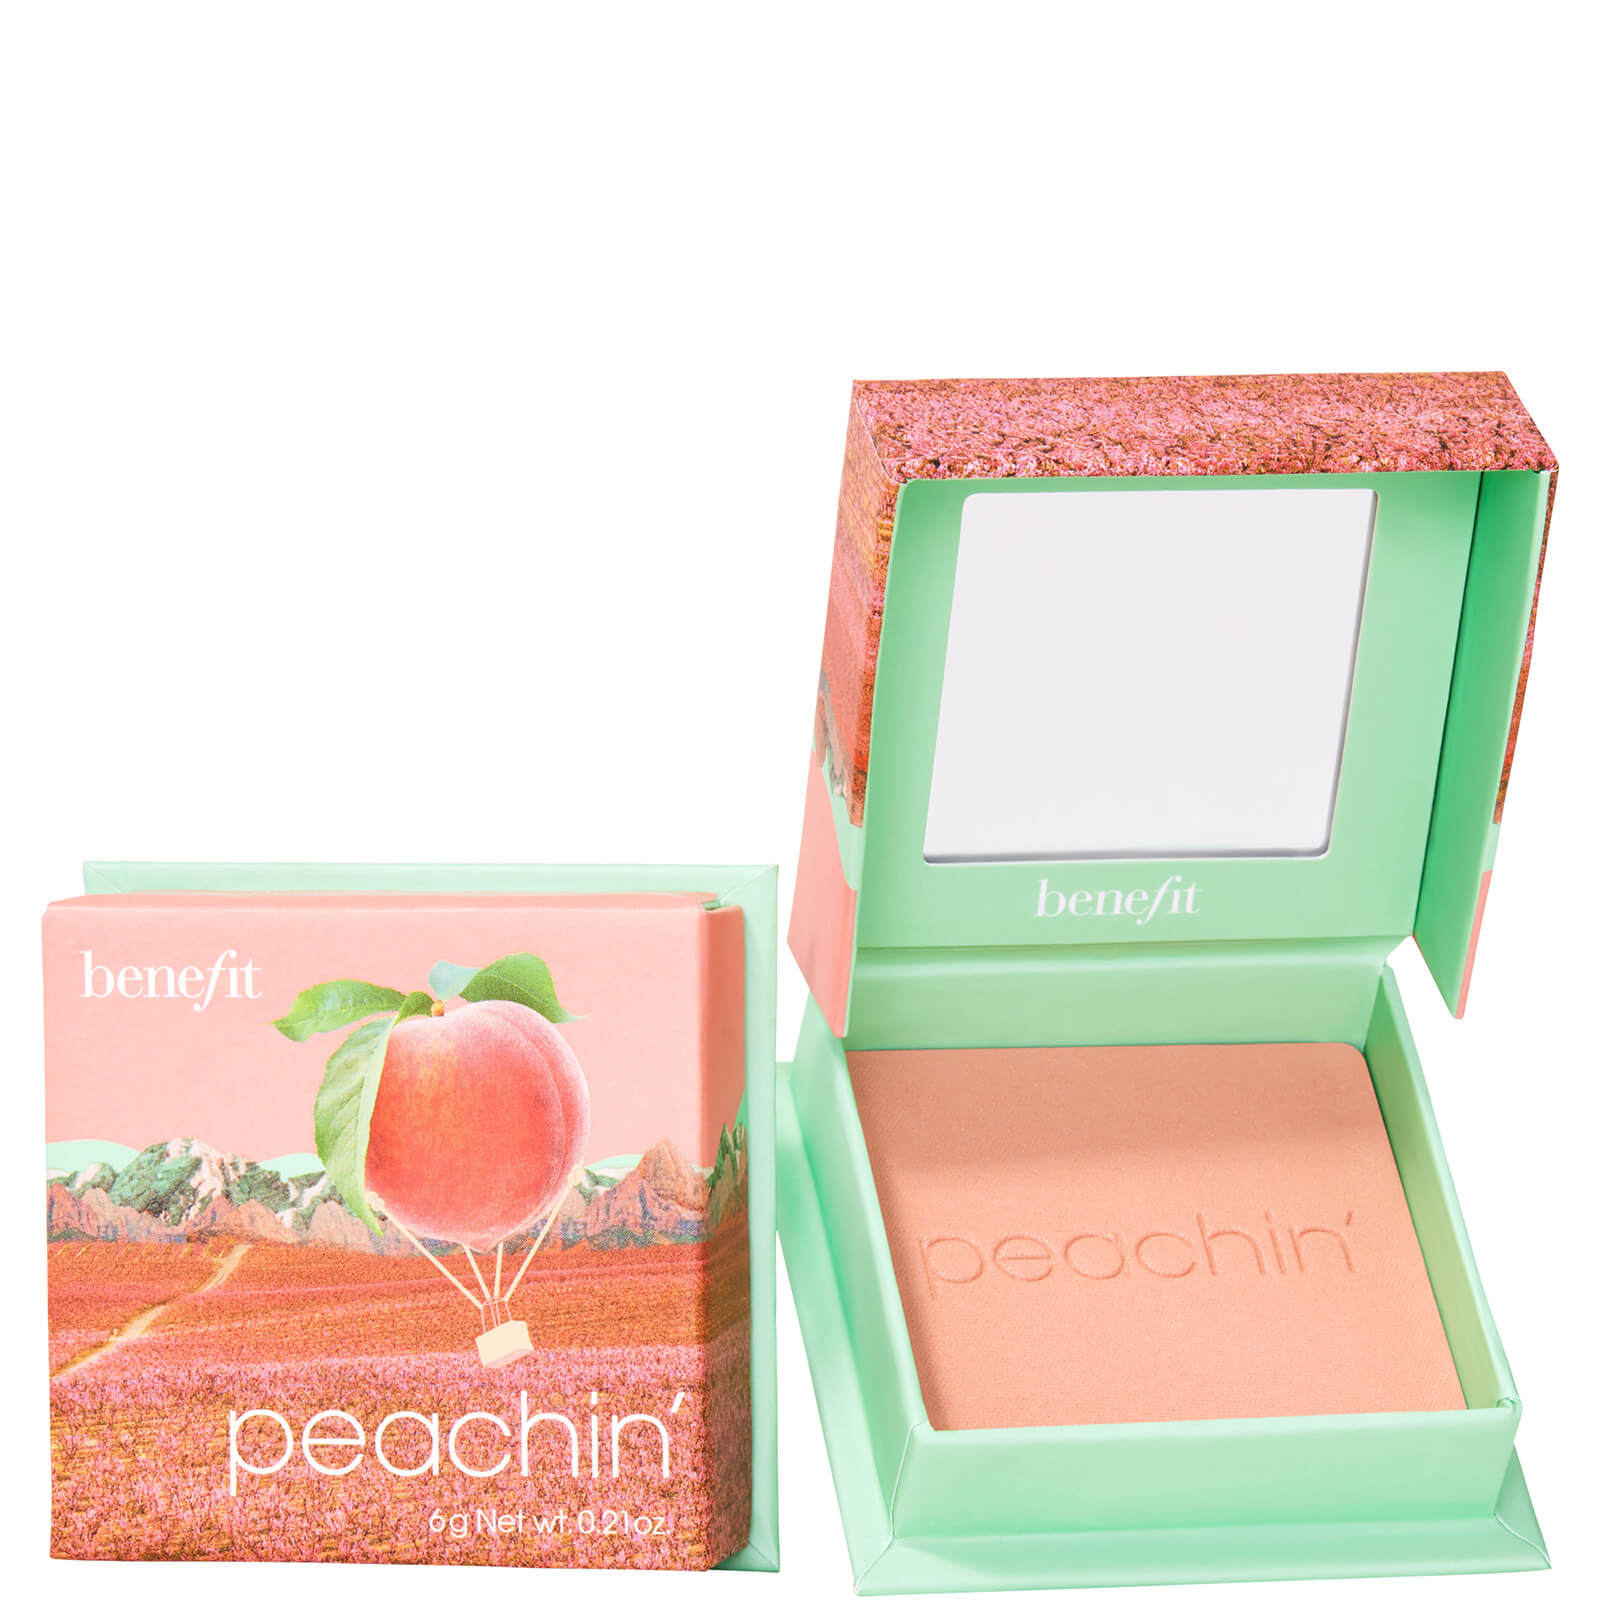 Photos - Face Powder / Blush Benefit Peachin Peach Blush Powder 6g 